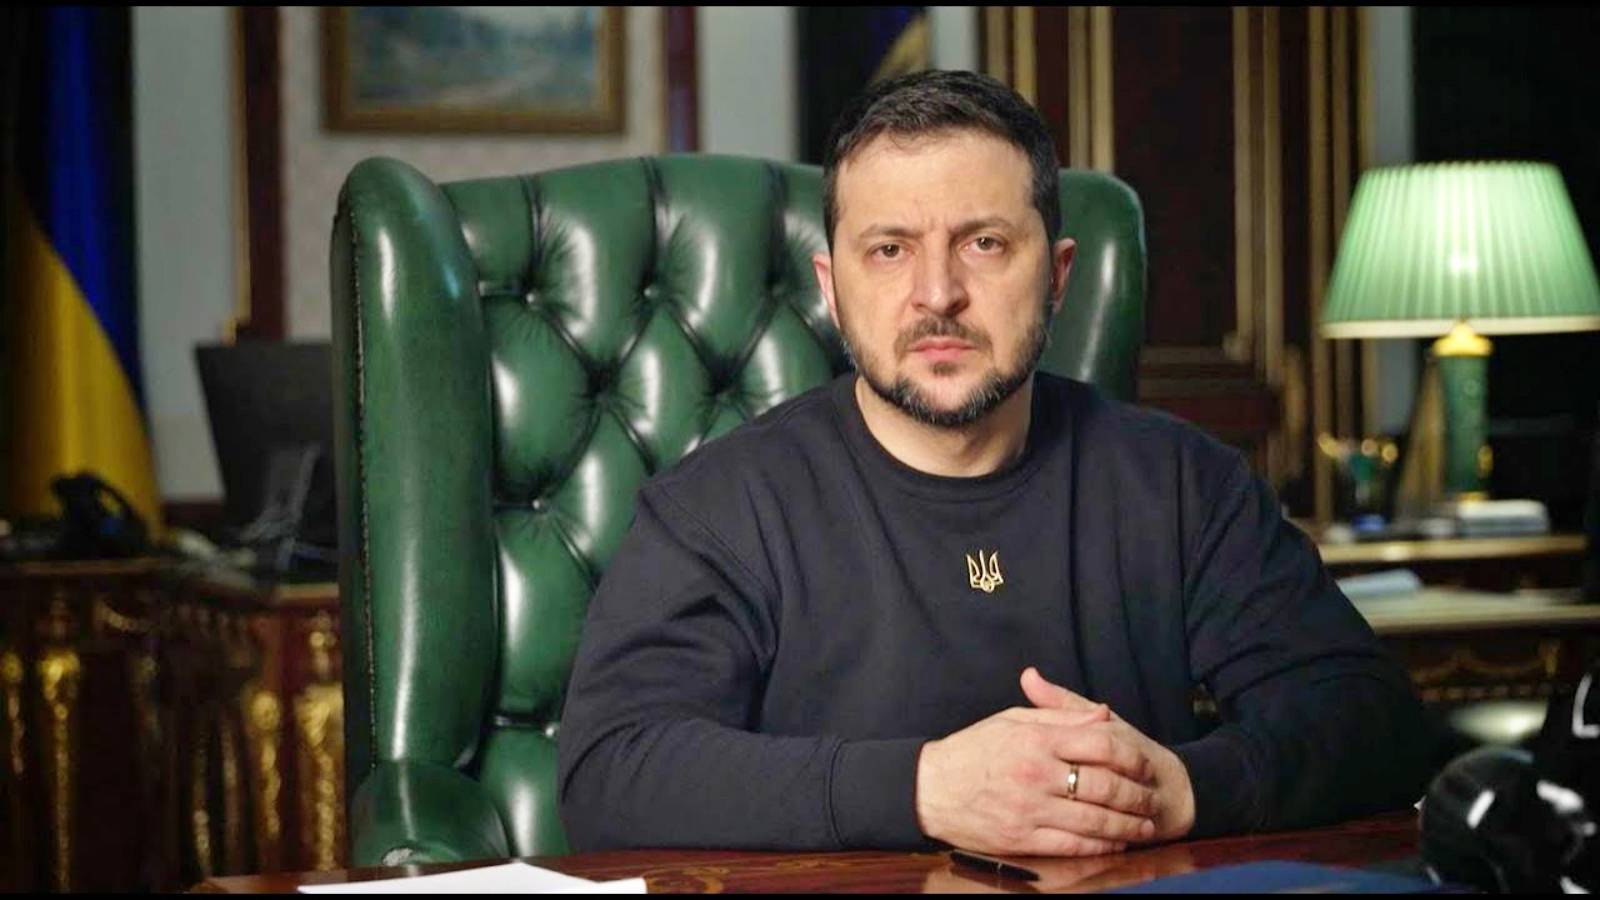 Le président ukrainien annonce de nouveaux efforts intenses pour aider l'armée et les mesures de Volodymyr Zelensky